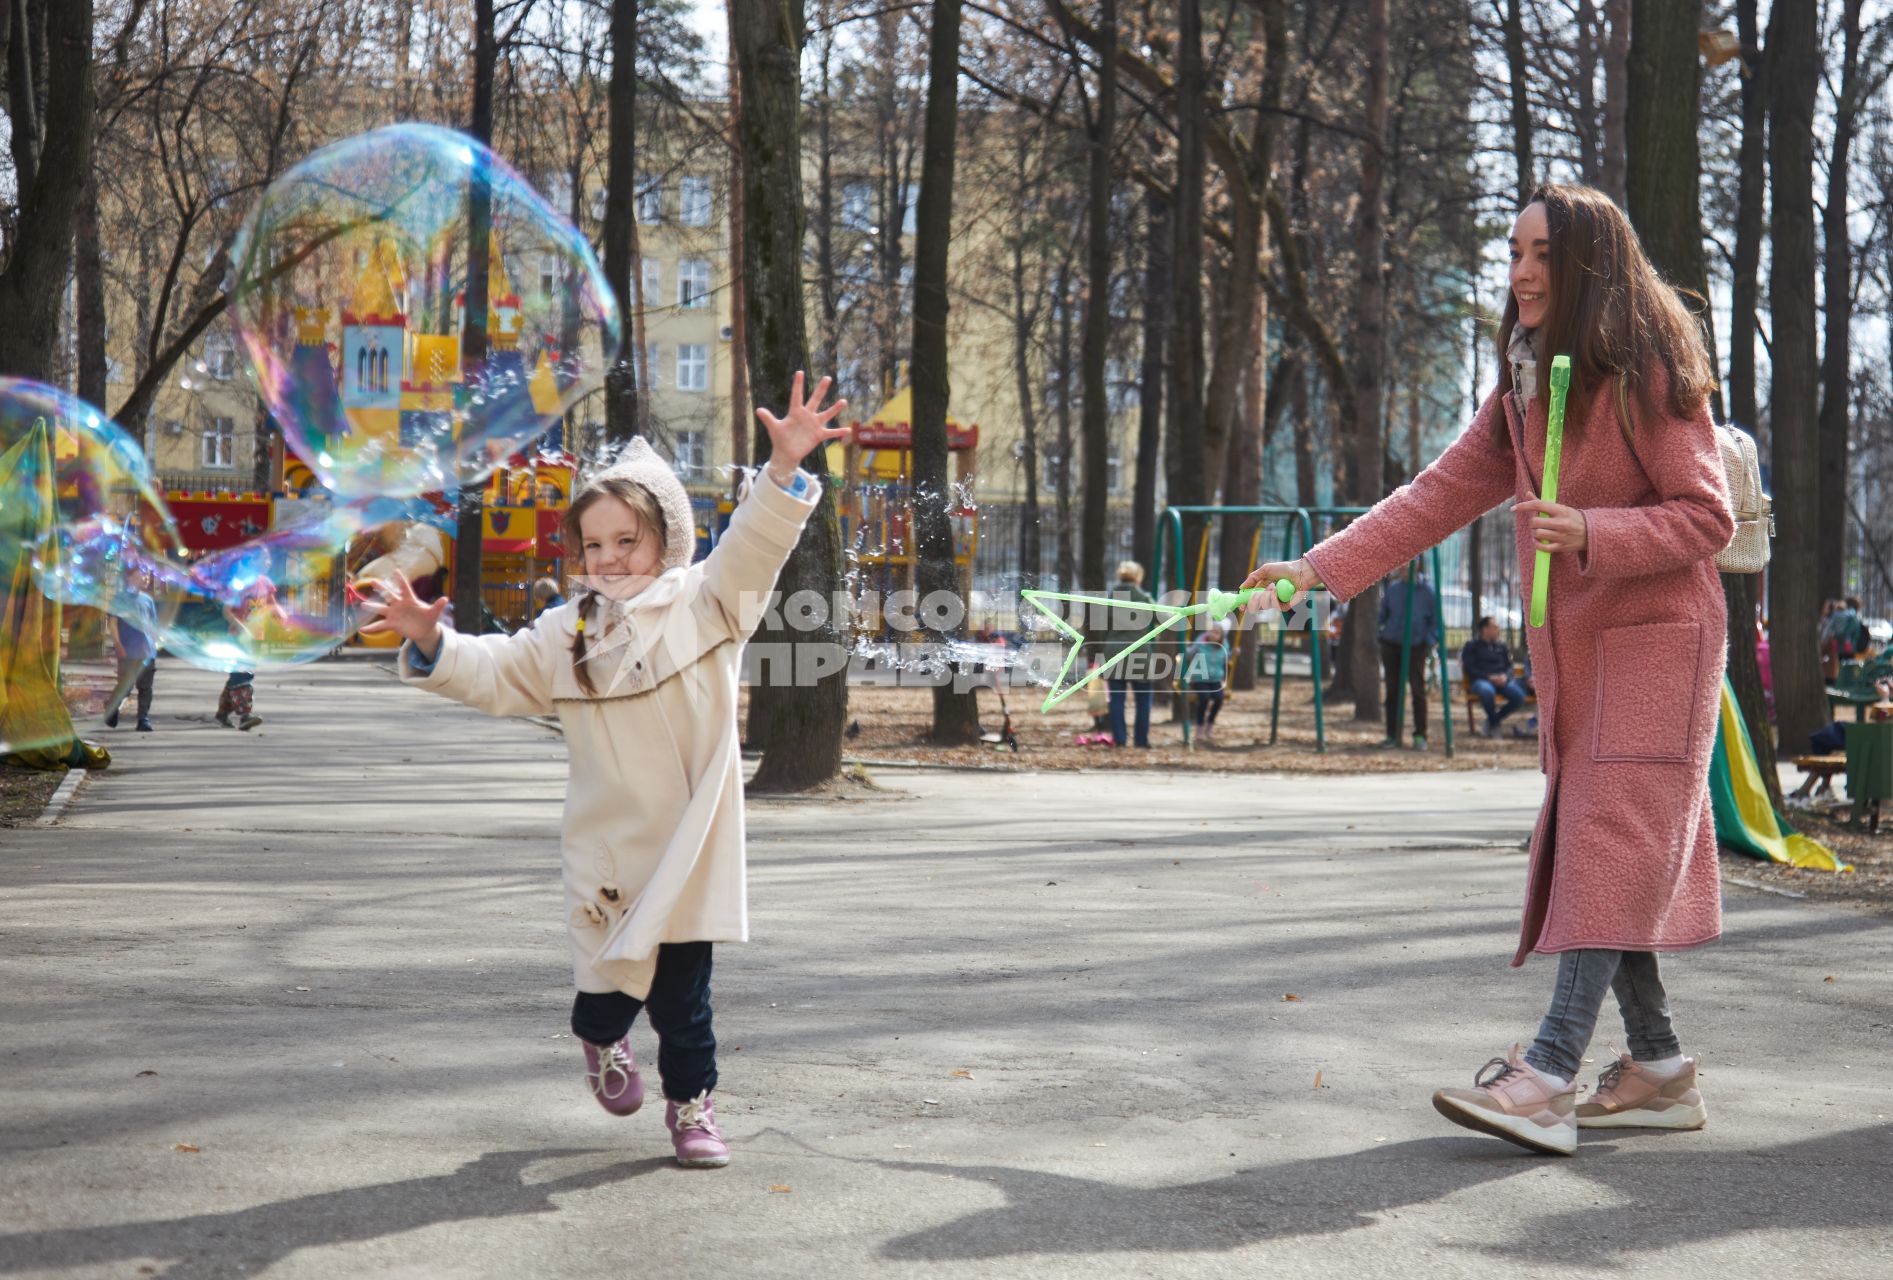 Пермь.  Женщина с девочкой  гуляют в парке.